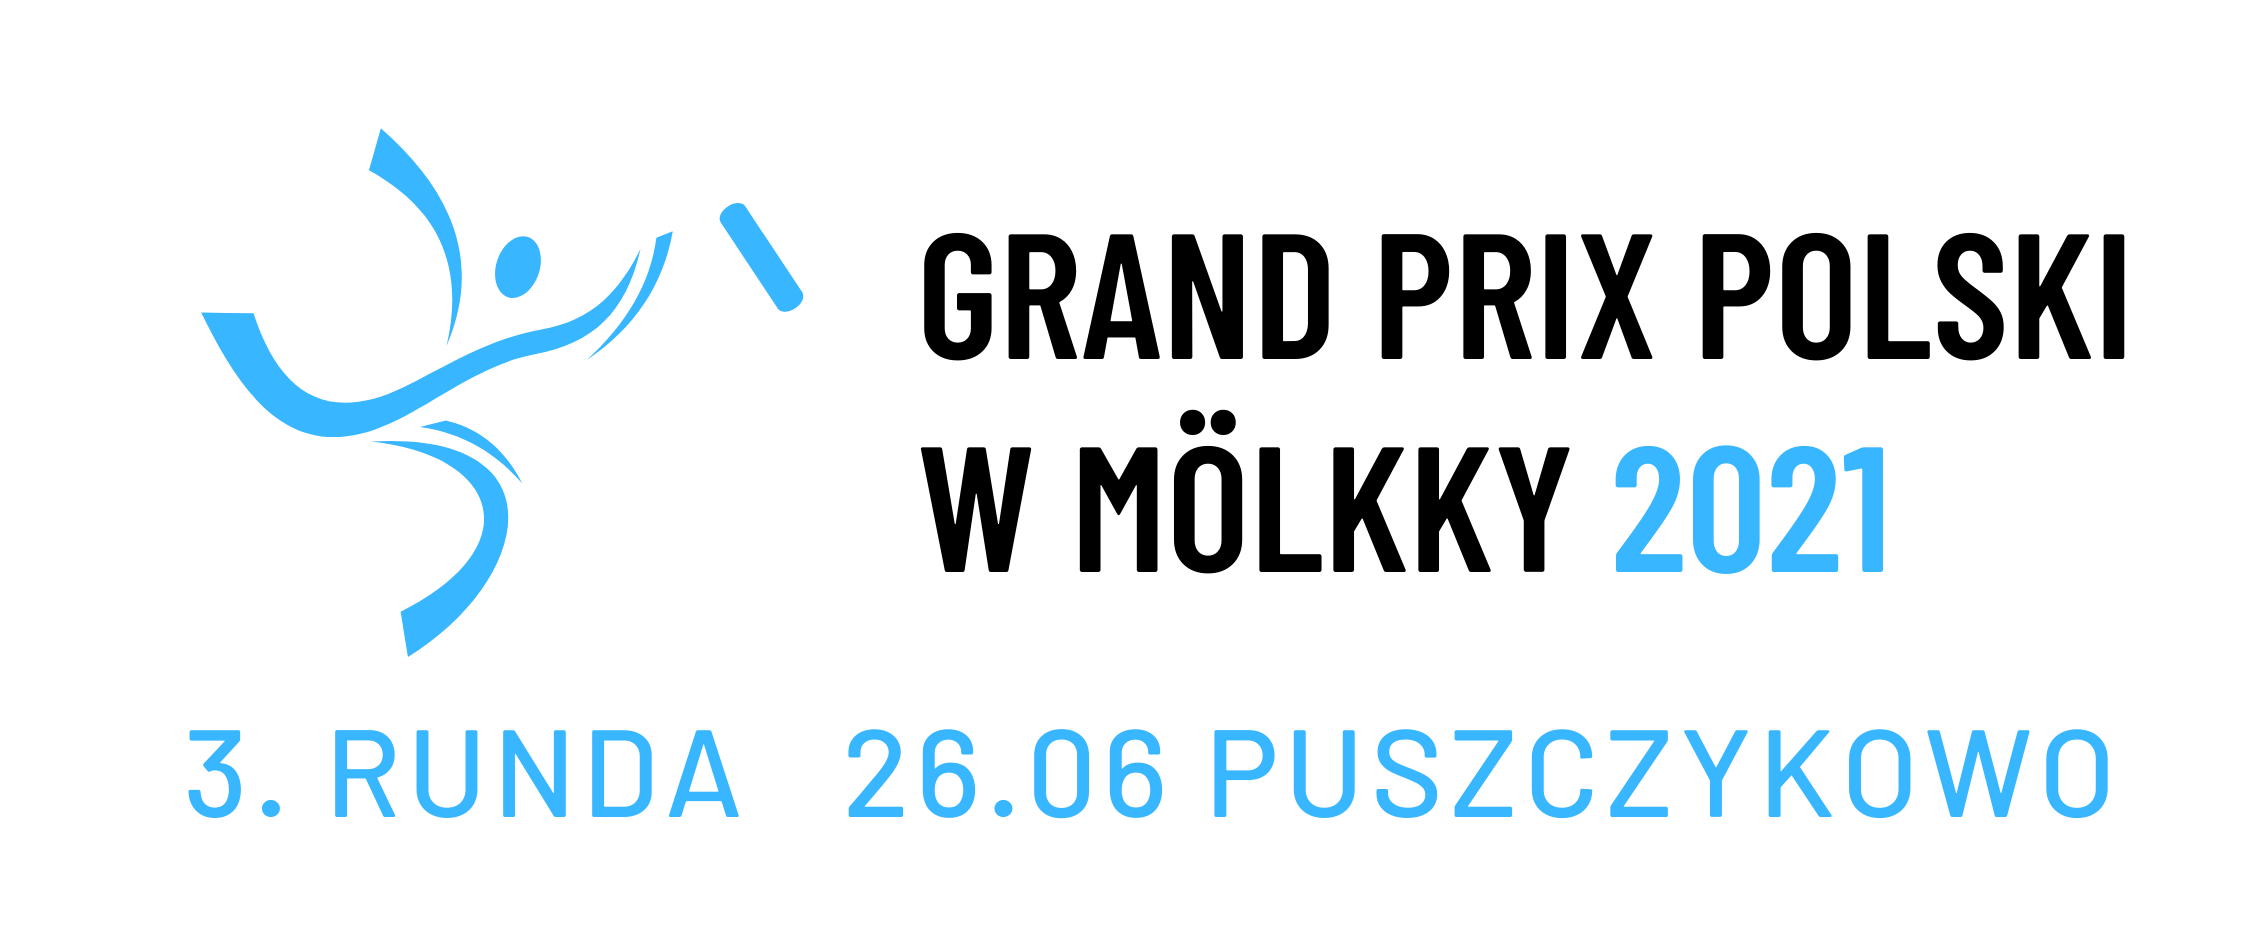 Grand Prix Polski w Mölkky 2021 - Event 3/5